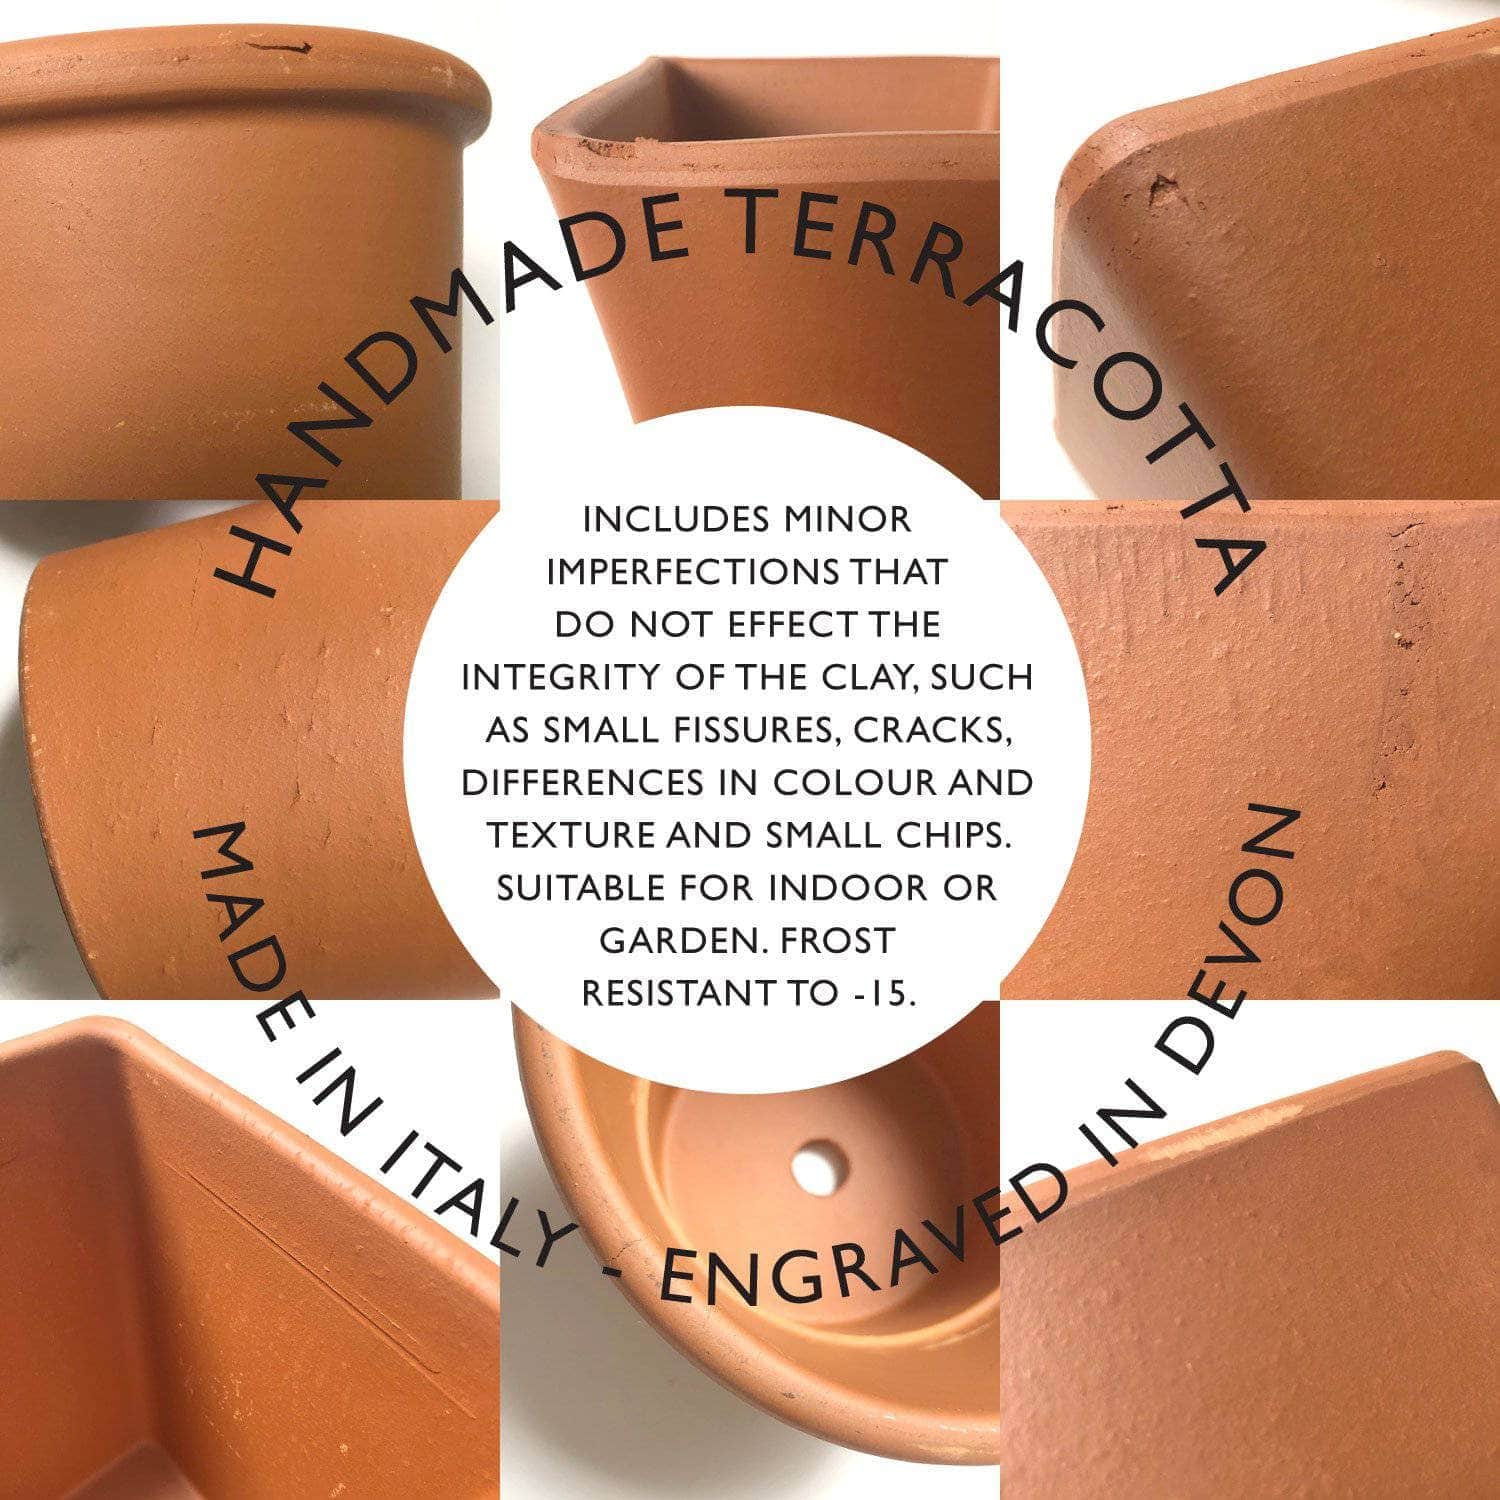 letterfest terracotta Engraved Family Home Pot